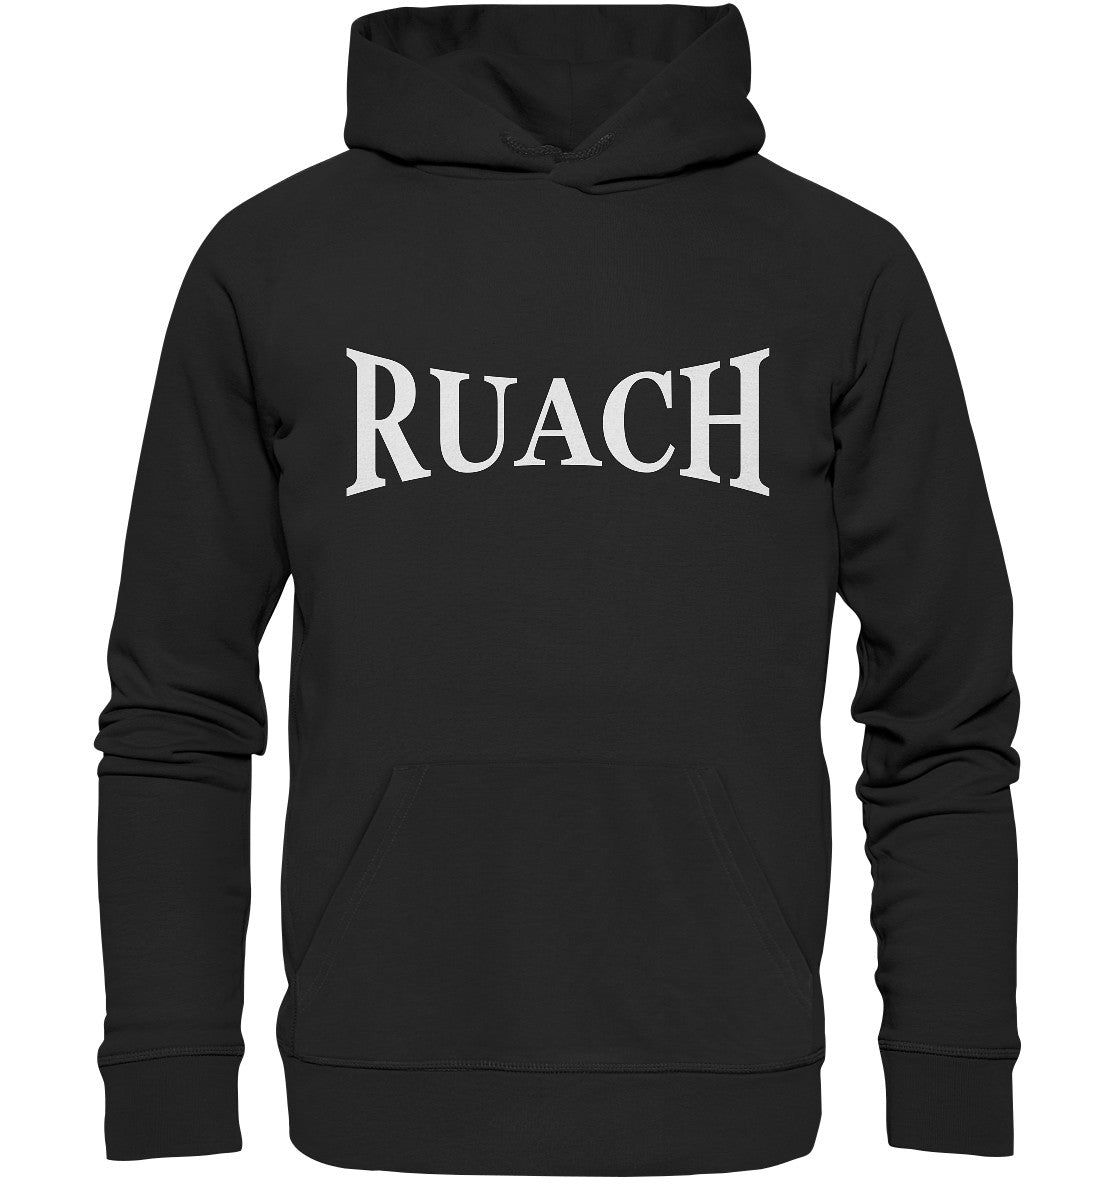 Ruach - Organic Hoodie